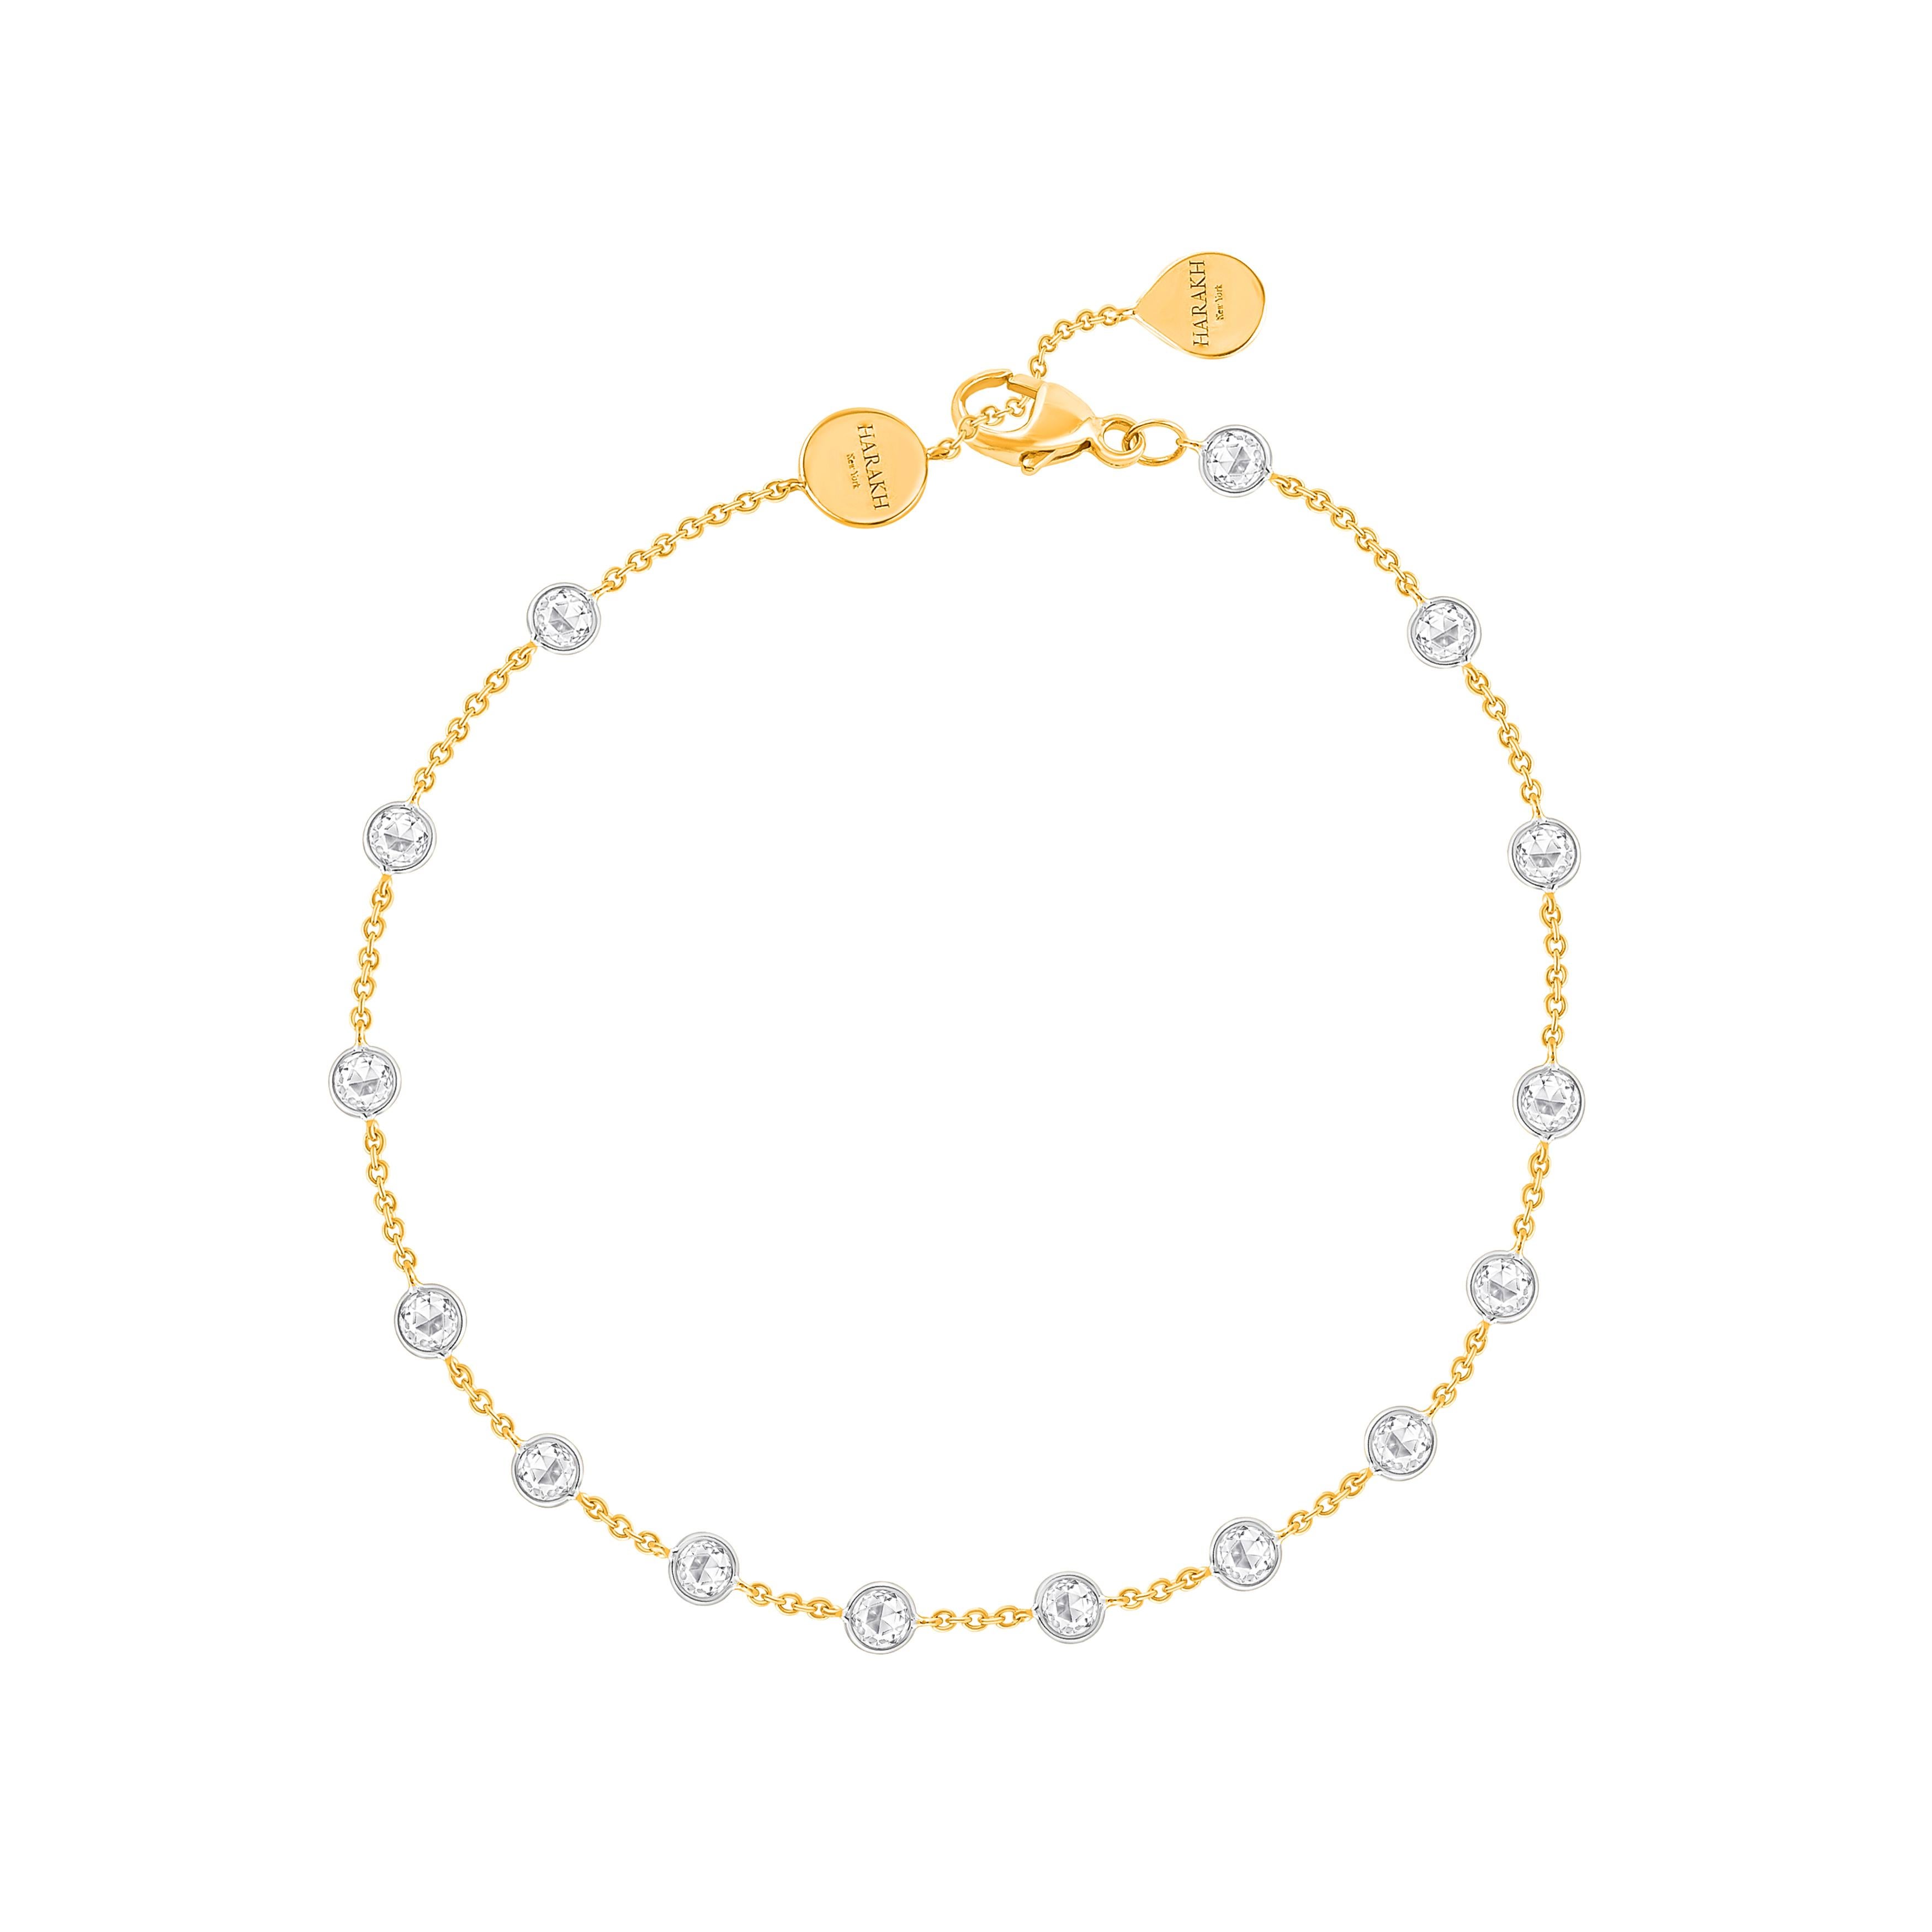 Inspiriert von der Freude, einen rauschenden Wasserfall zu erleben, ist dieses elegant gestaltete Armband mit 1/2 Karat natürlichen farblosen Diamanten im Rosenschliff in einer Zackenfassung besetzt und wunderschön in 18 KT Weiß- und Gelbgold